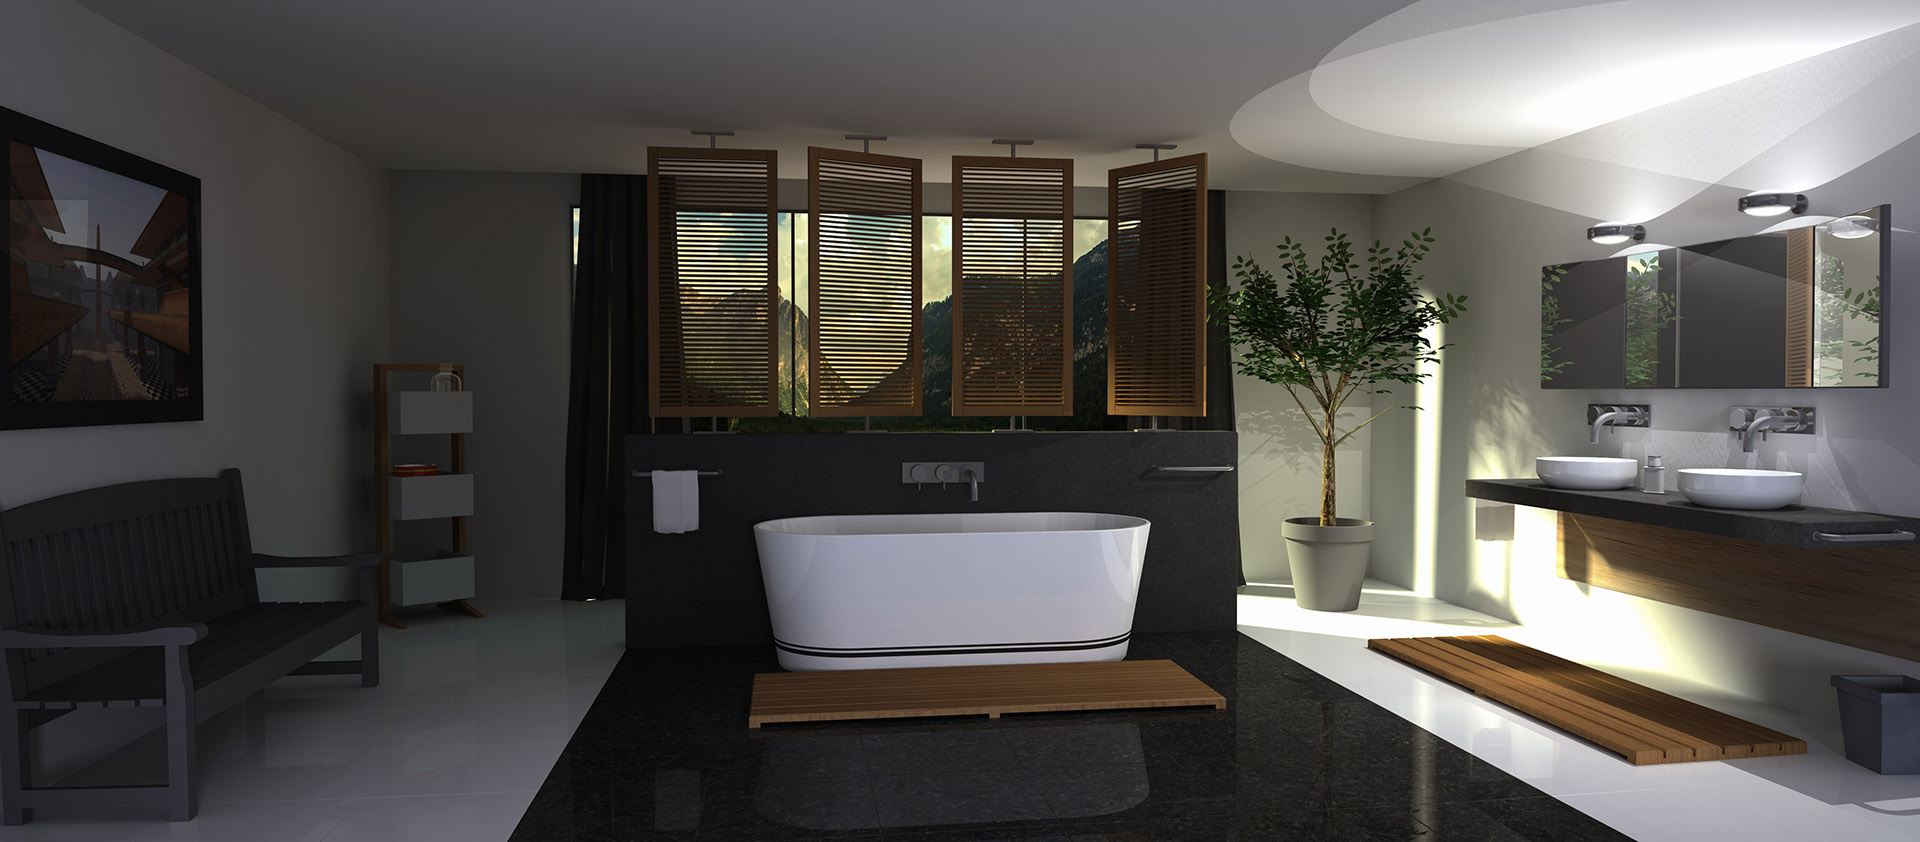 Photographie d'une salle de bains avec baignoir design